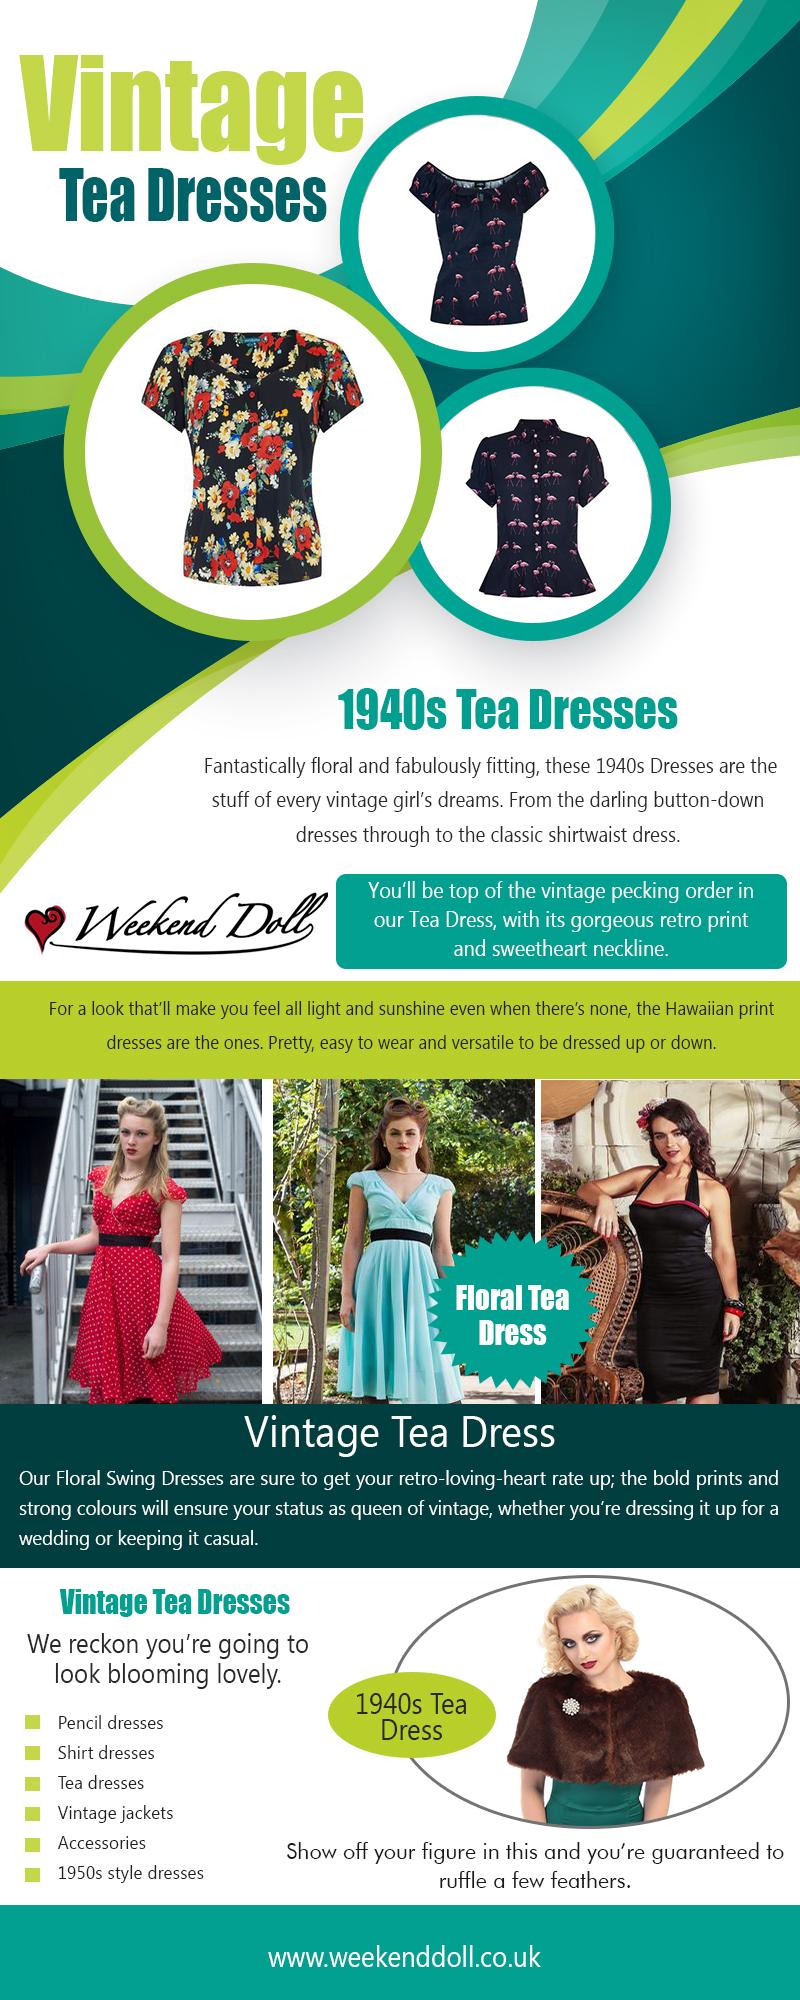 Vintage Tea Dresses